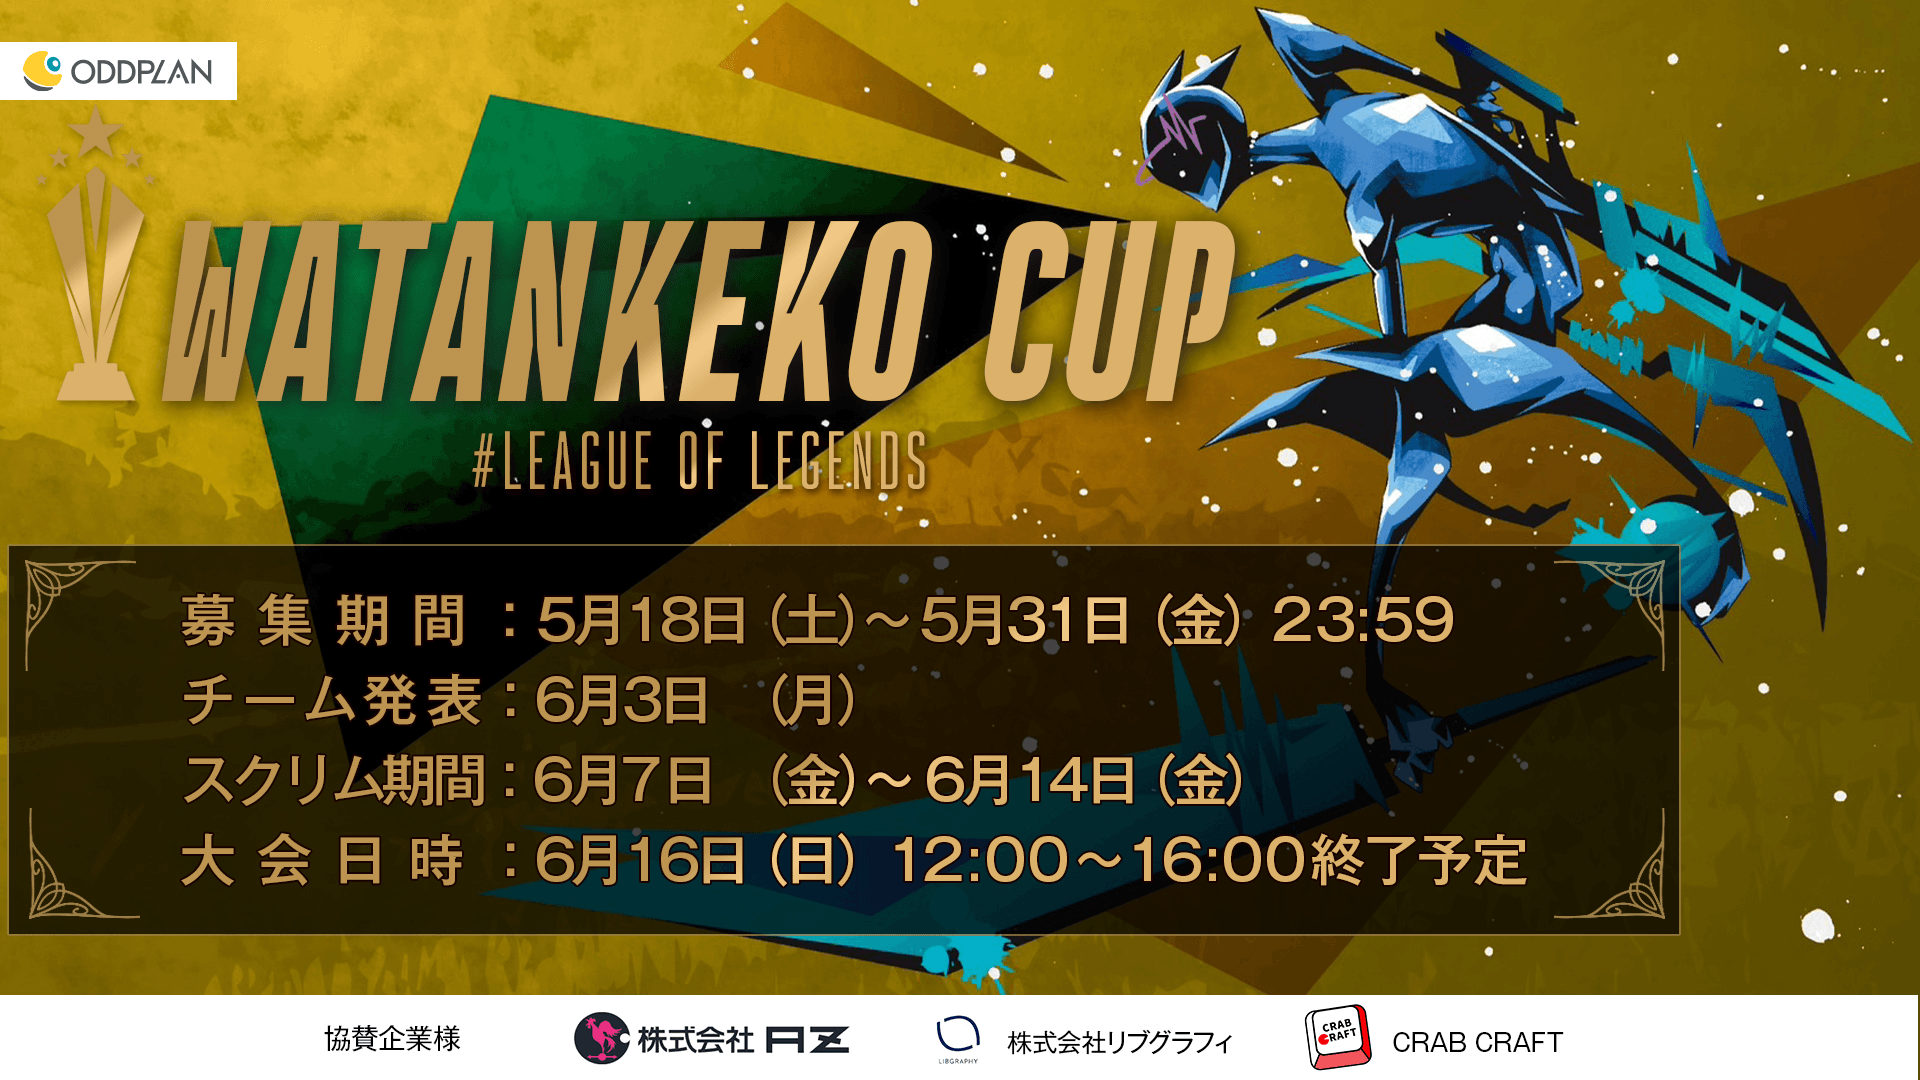 第1回 WATANEKO CUP “The Vanguard”の見出し画像